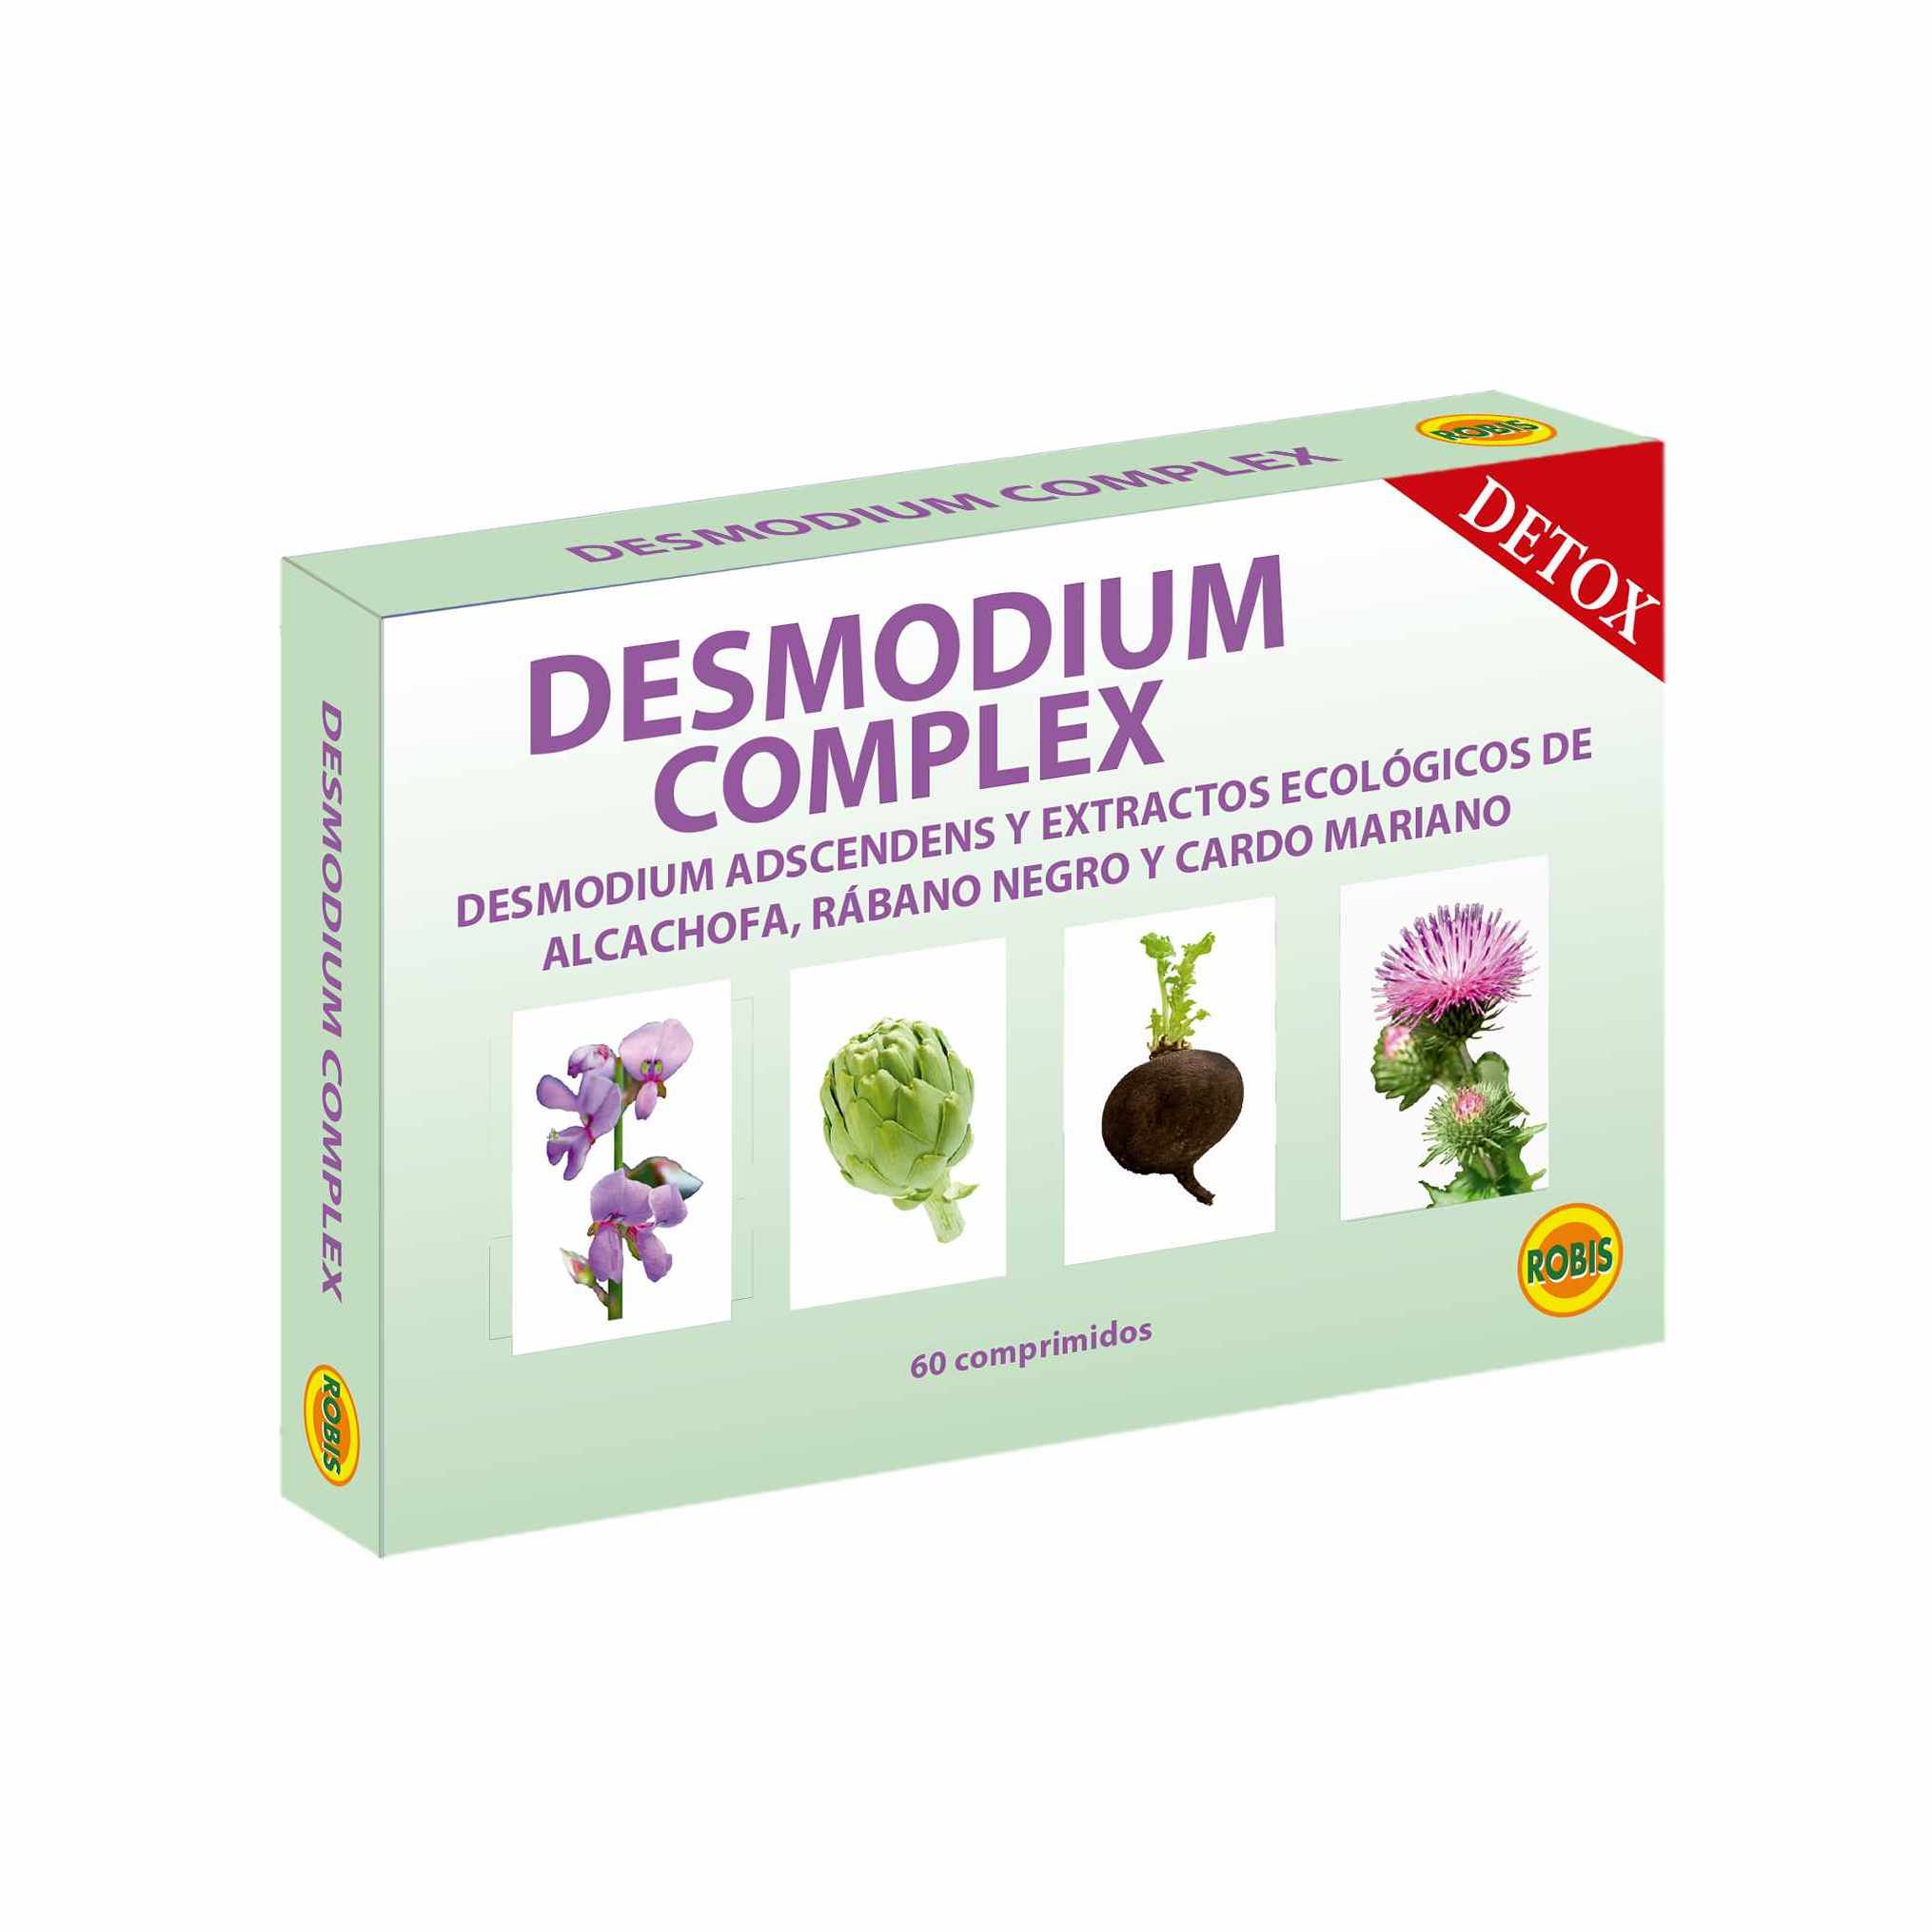 Desmodium Complex